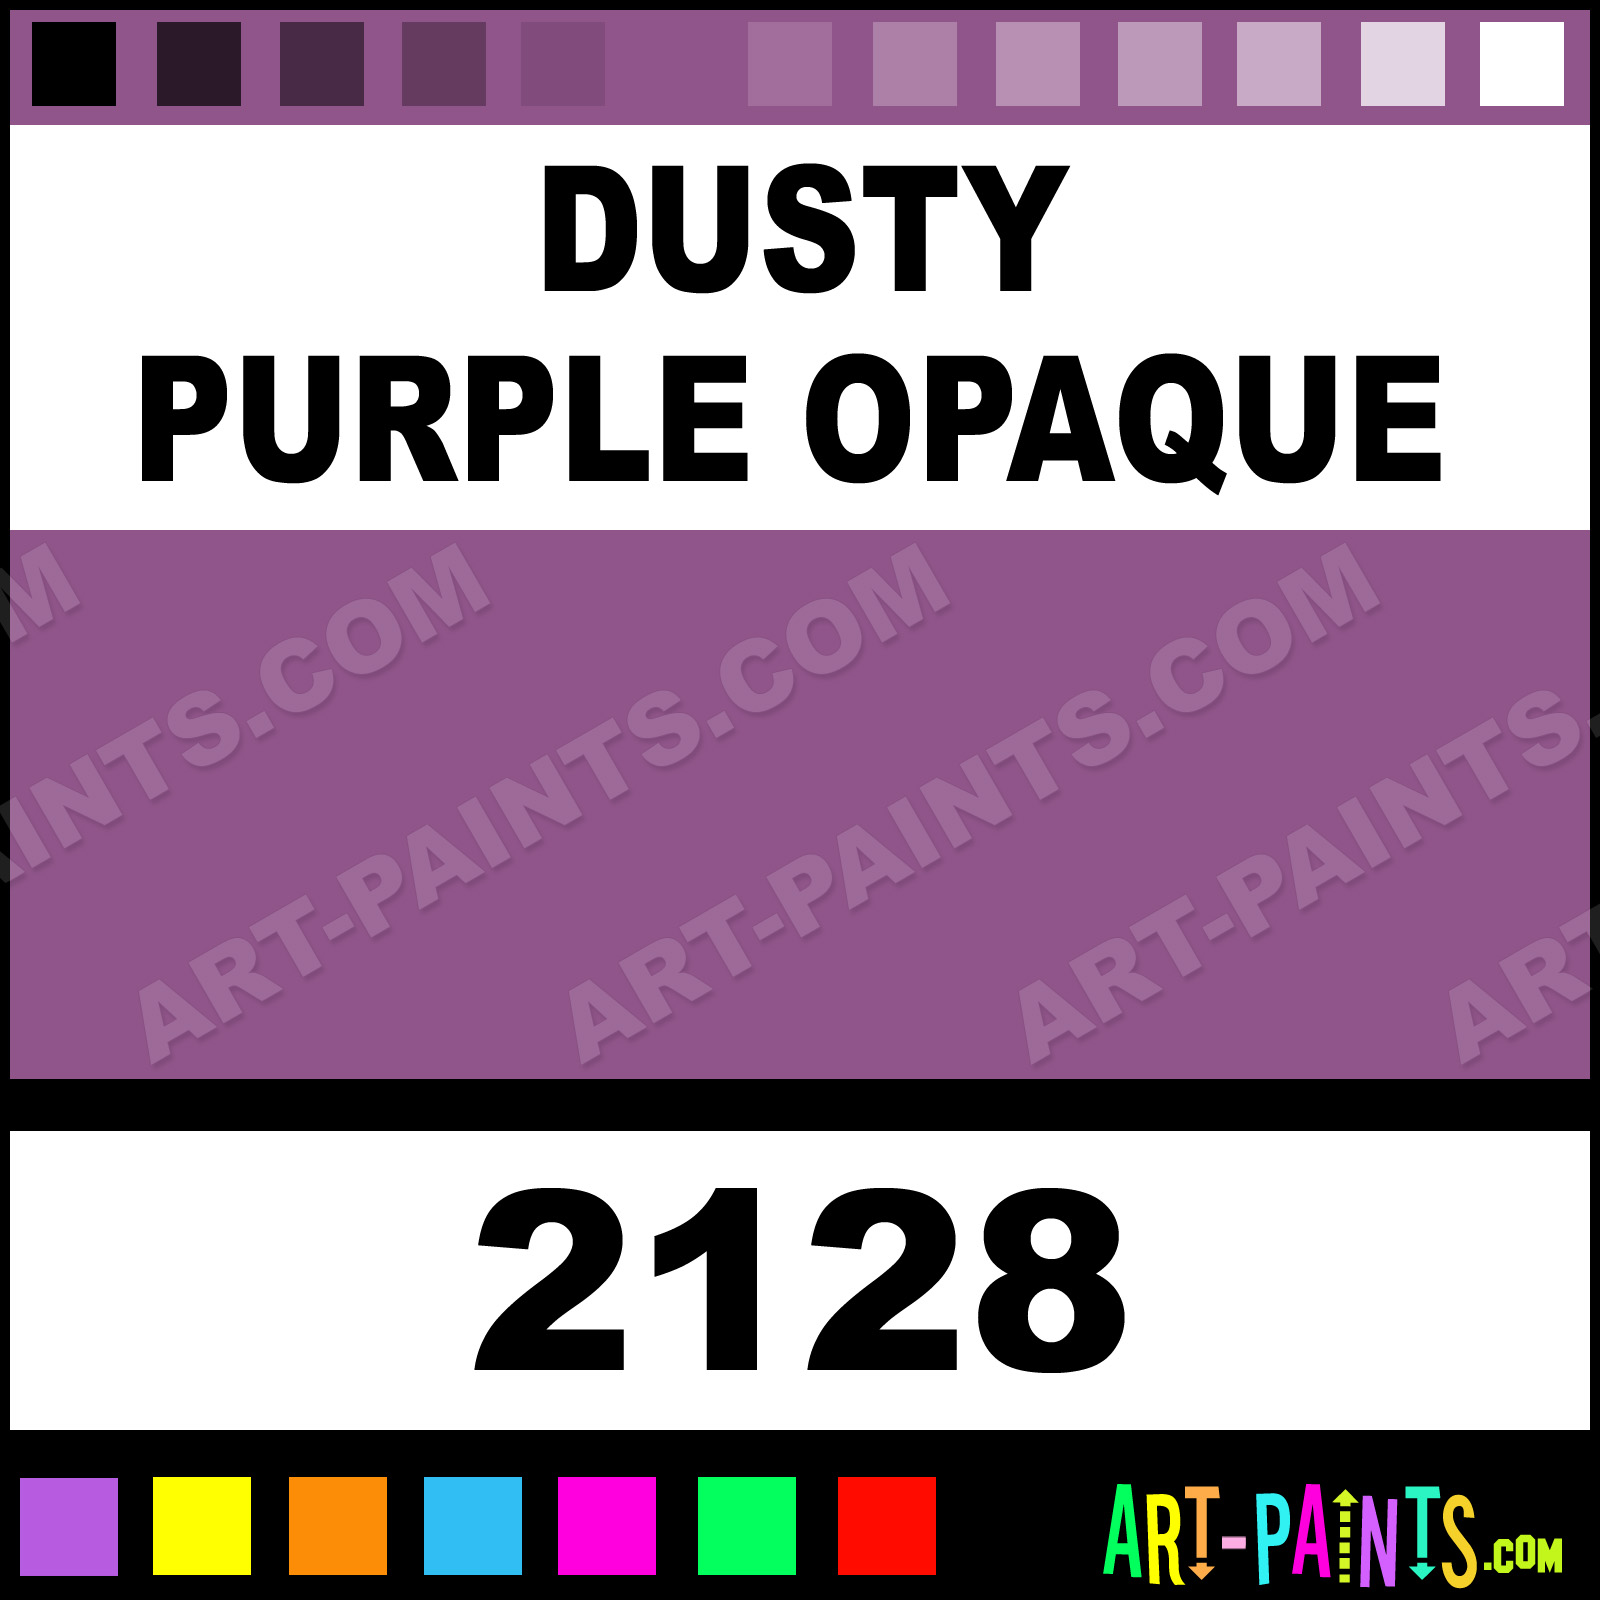 http://www.art-paints.com/Paints/Acrylic/Delta/Dusty-Purple-Opaque/Dusty-Purple-Opaque-xlg.jpg